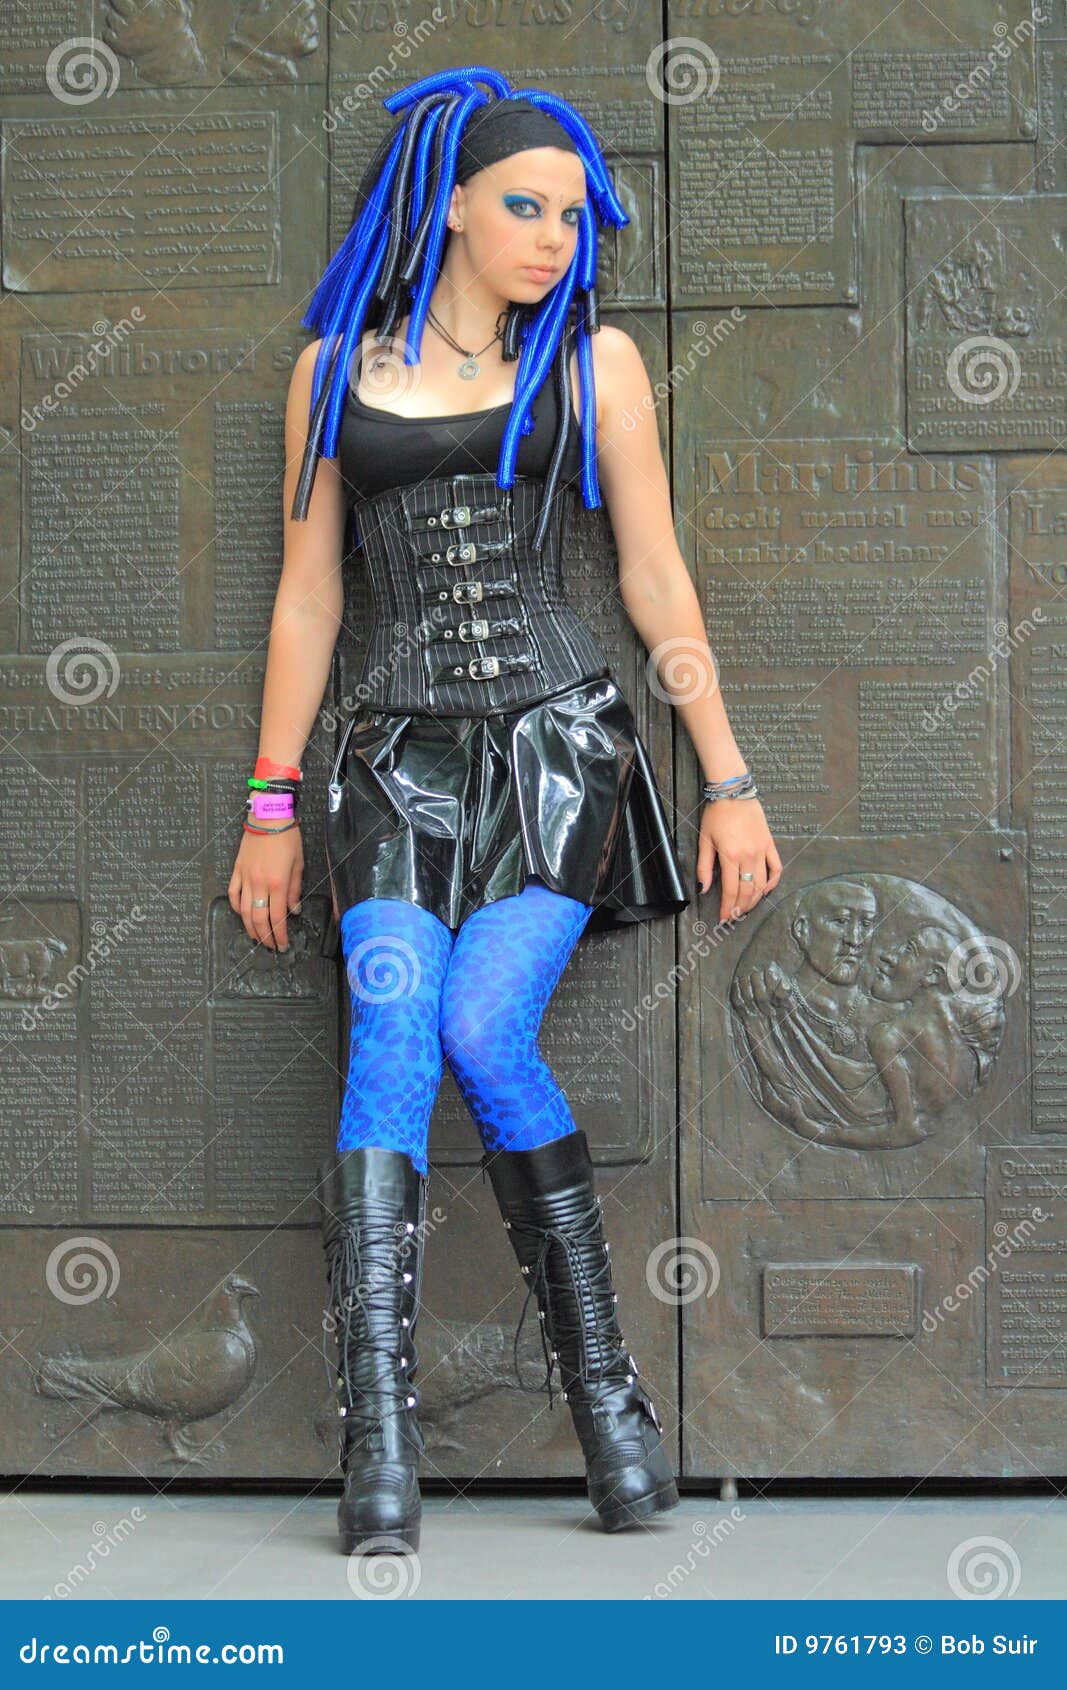 Gothic Outfit Vinyl Mini Skirt Stock Photos - Image: 9761793